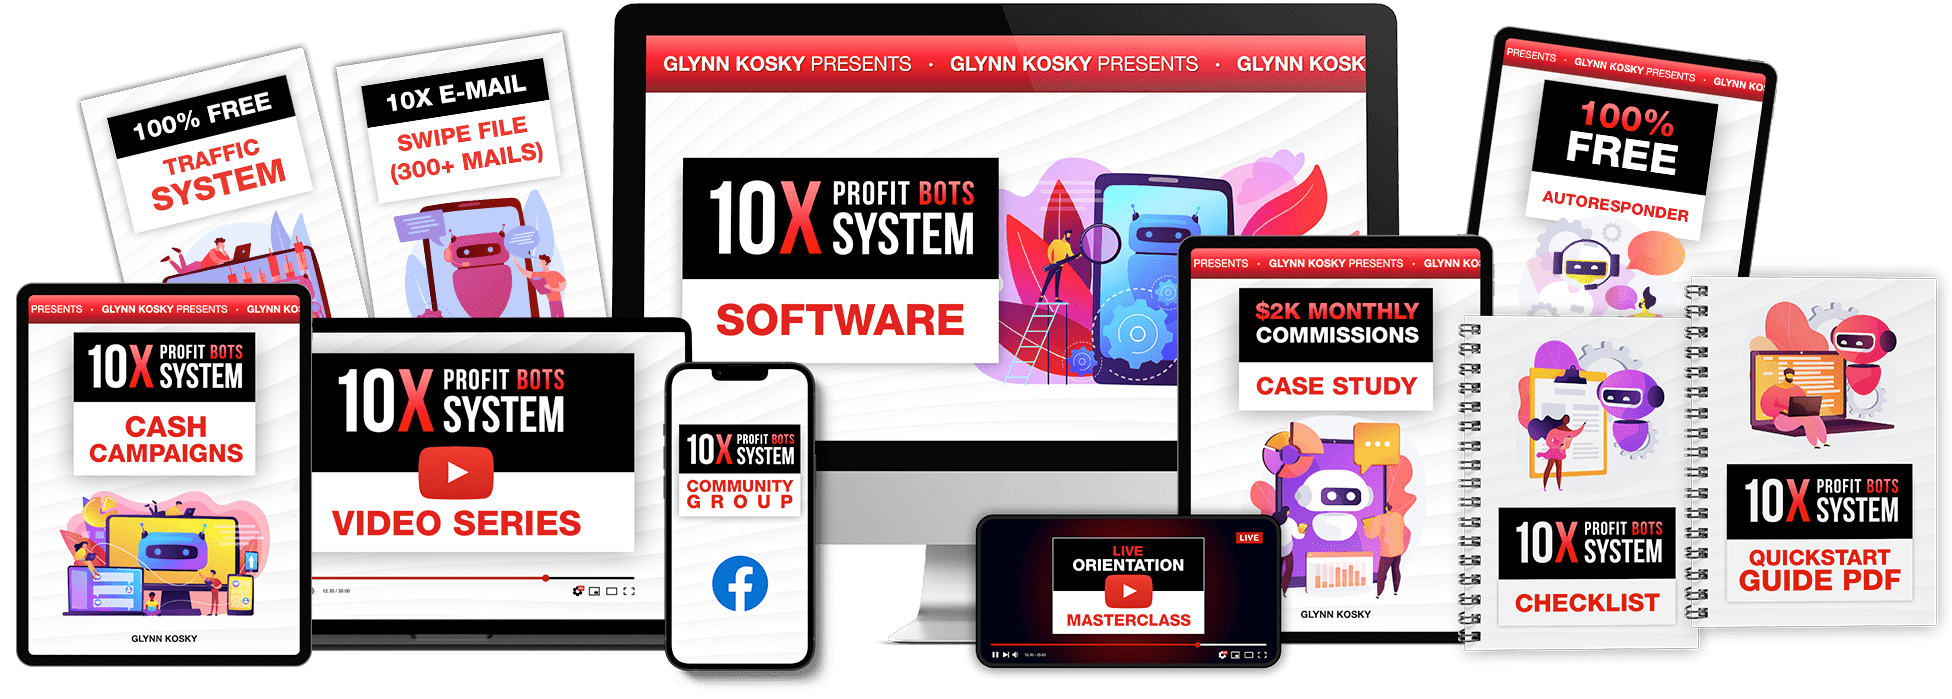 Glynn Kosky - 10X Profit Bots System